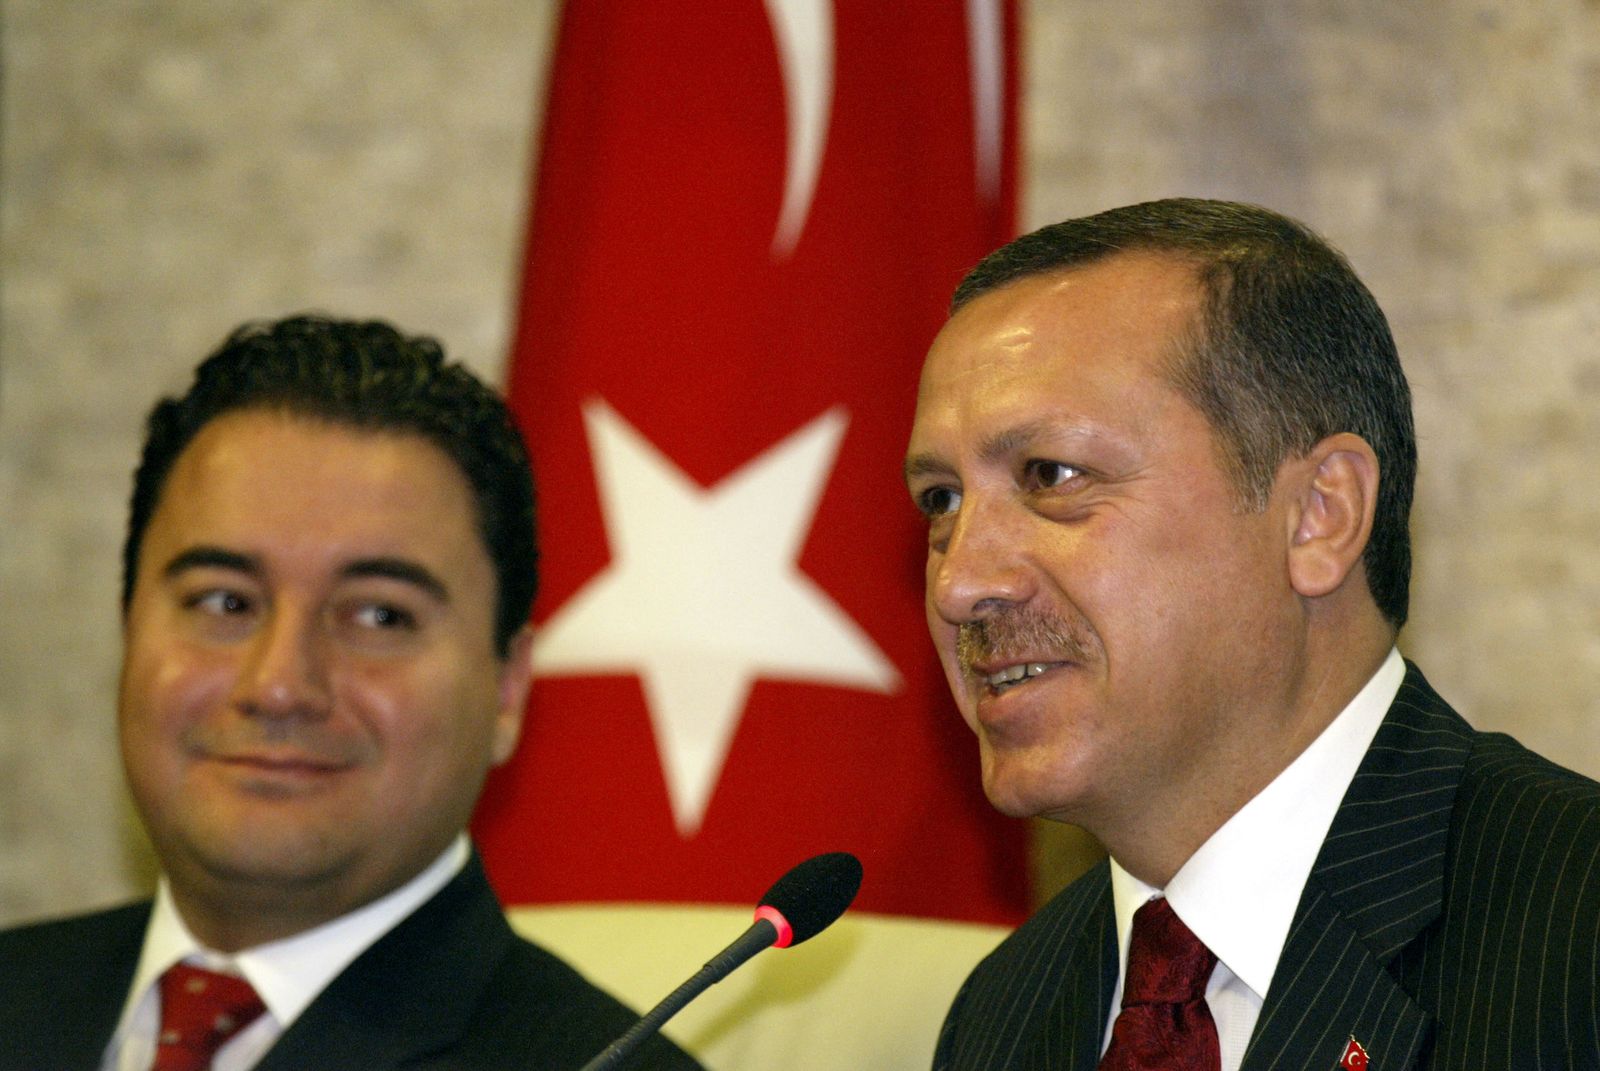 الرئيس التركي رجب طيب أردوغان ووزير الاقتصاد التركي السابق علي باباجان خلال اجتماع حكومي سابق في أنقرة، 16 سبتمبر 2004 - AFP